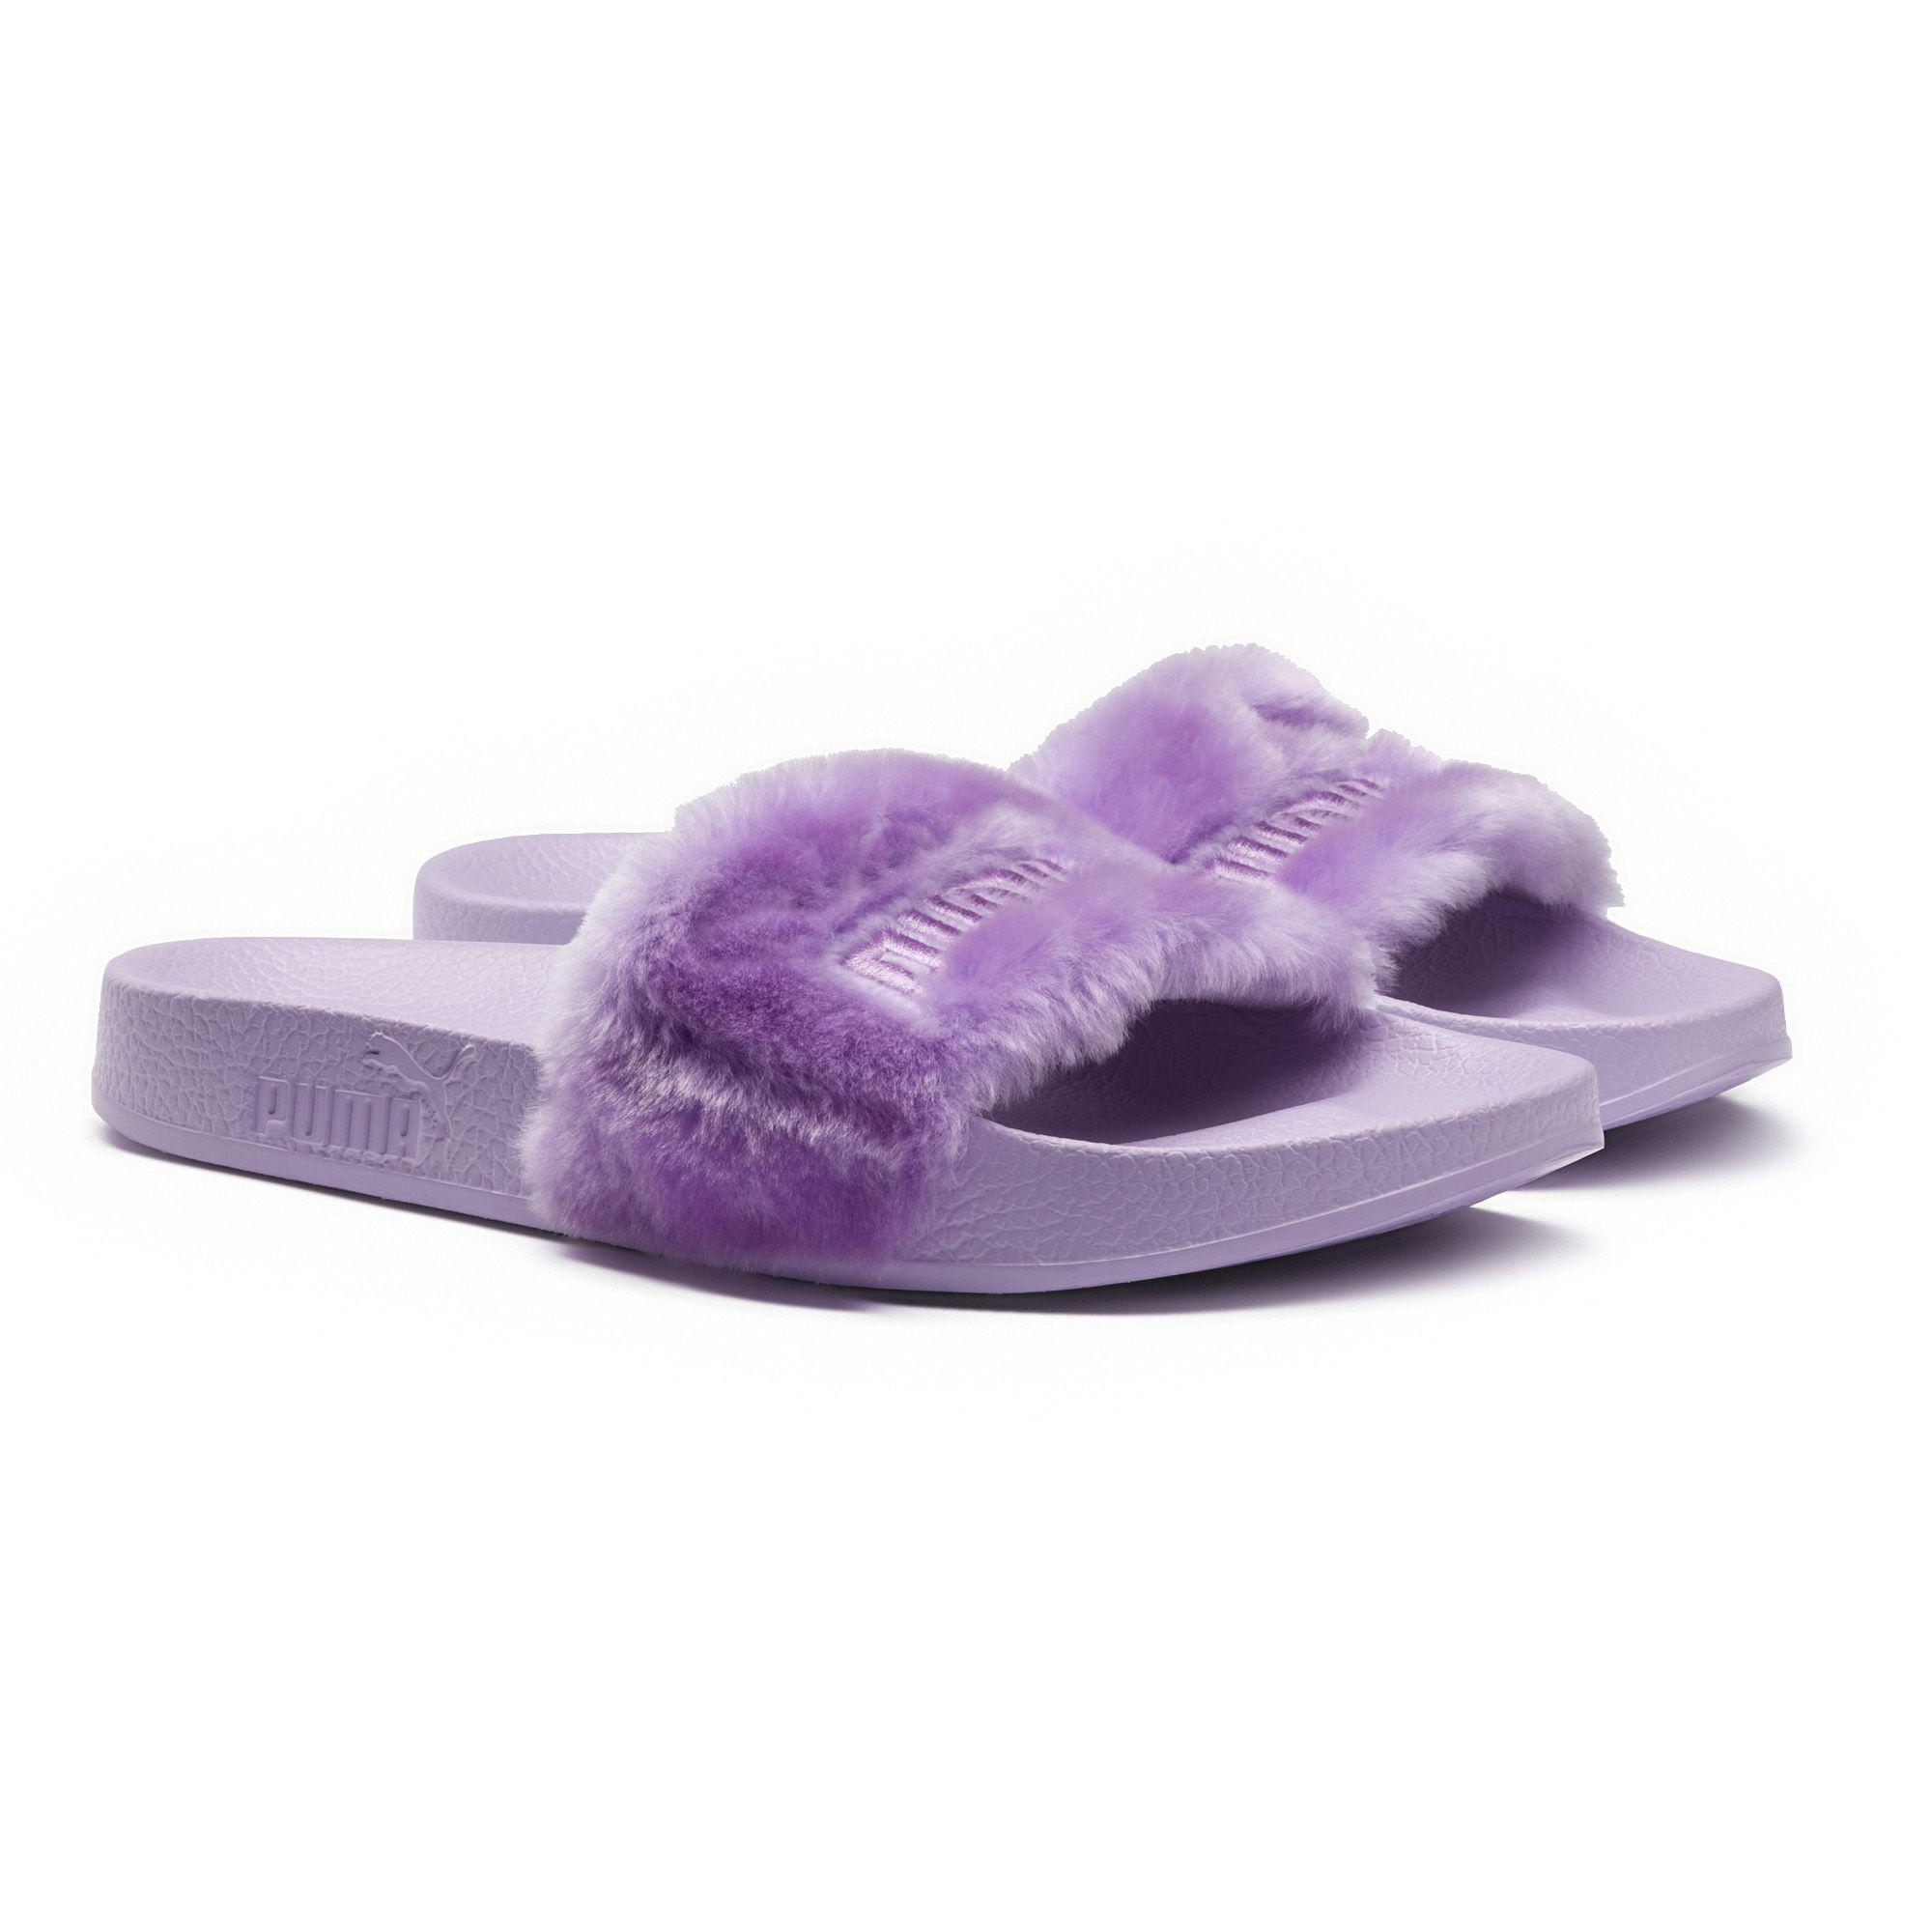 purple fenty puma slides